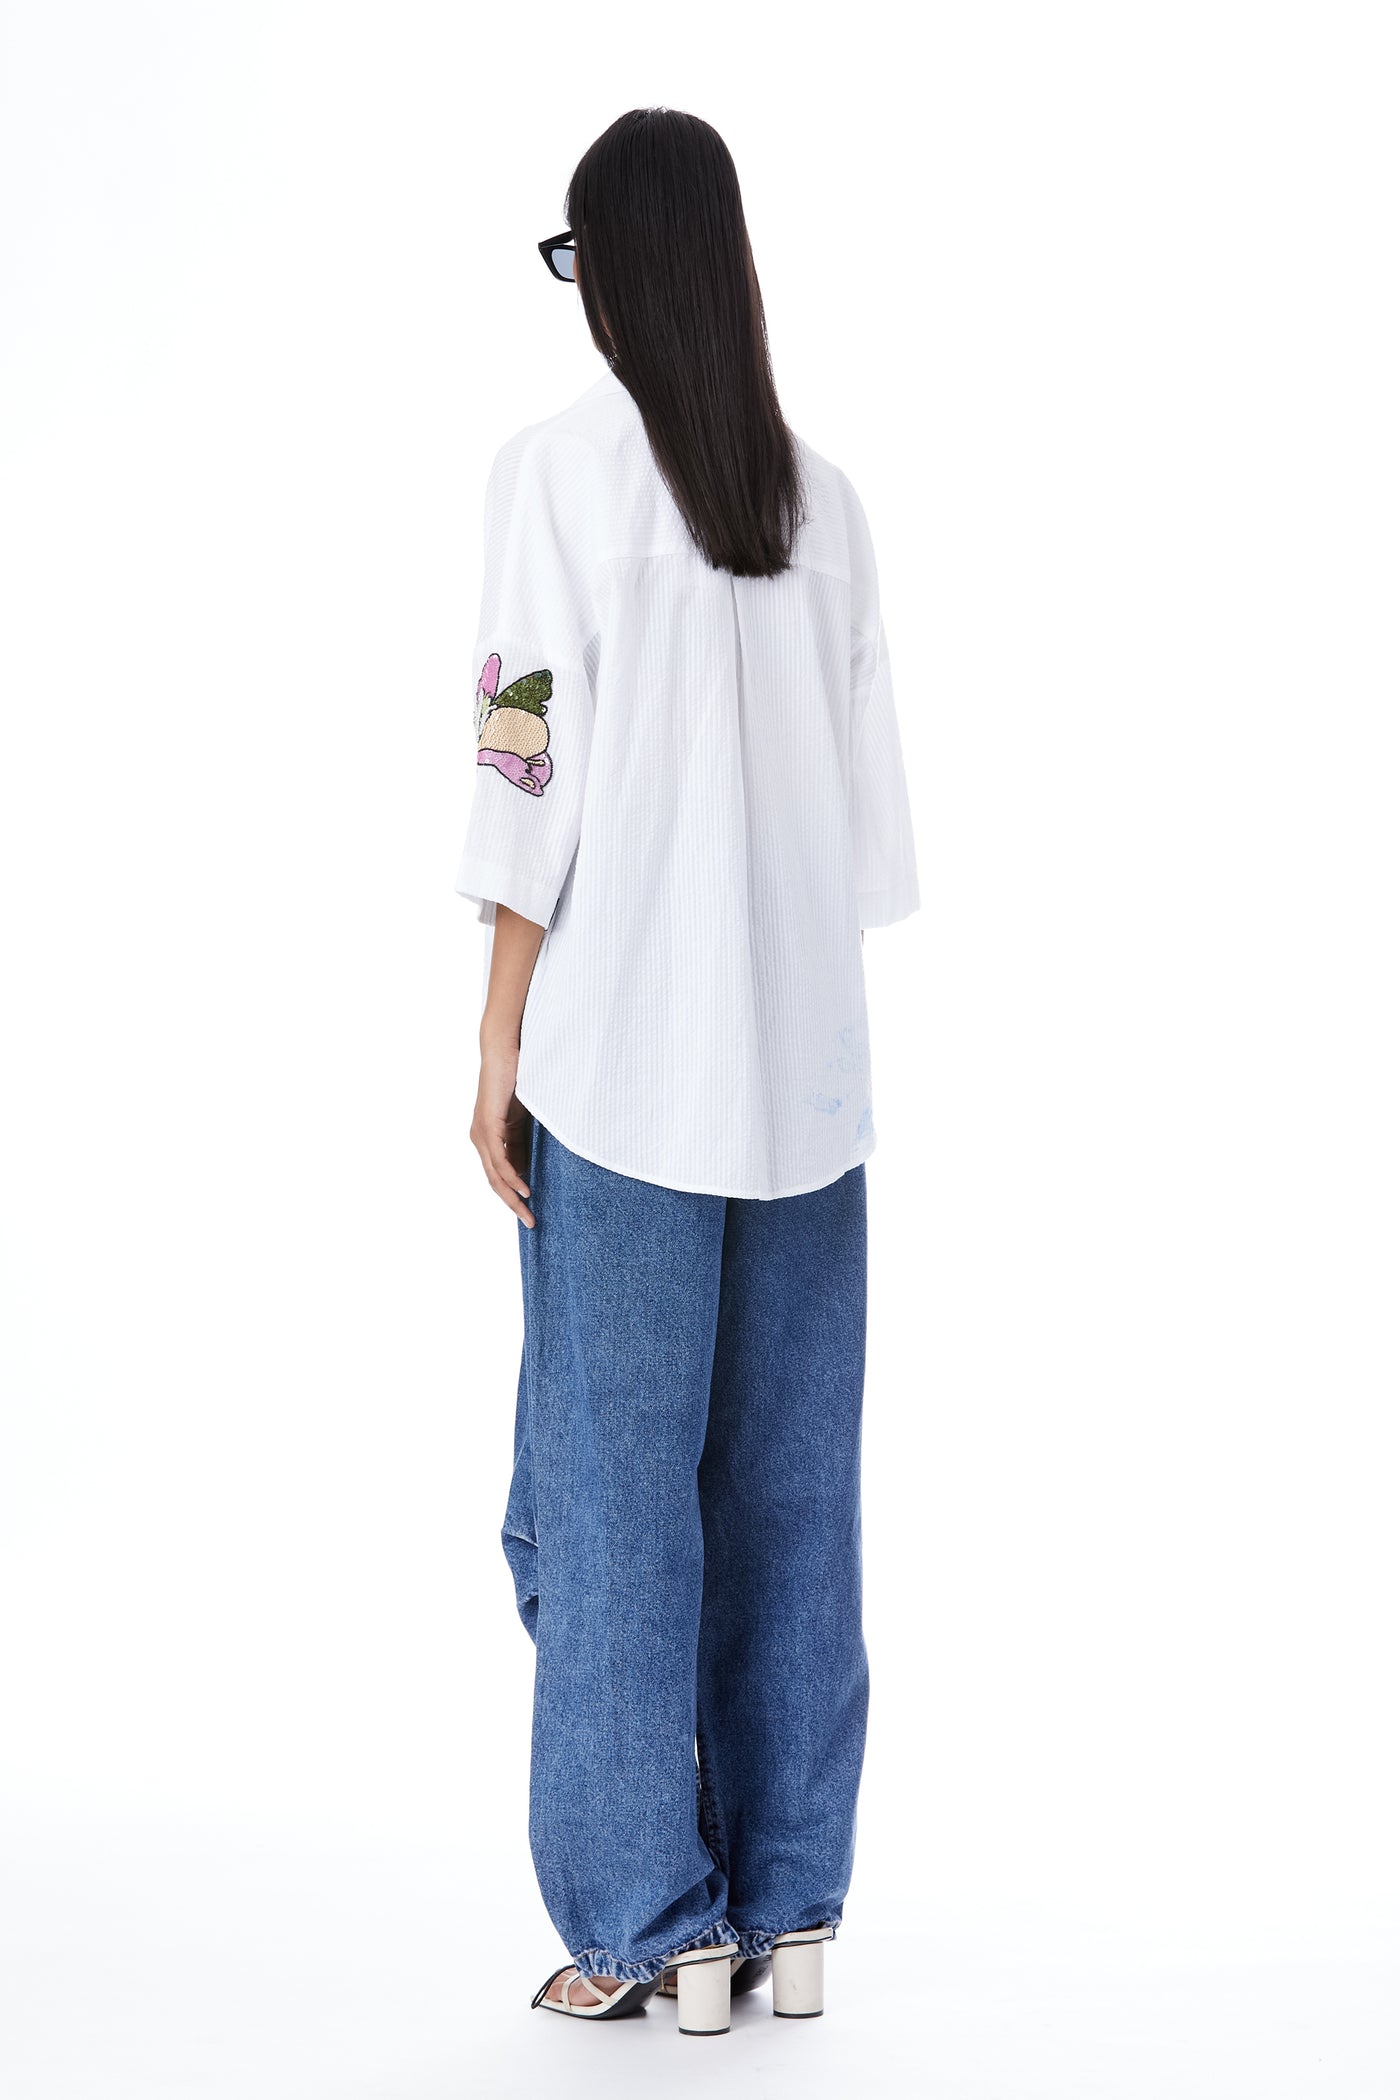 Kanika Goyal Label Twin Peonies Hand Embellished Shirt indian designer wear online shopping melange singapore